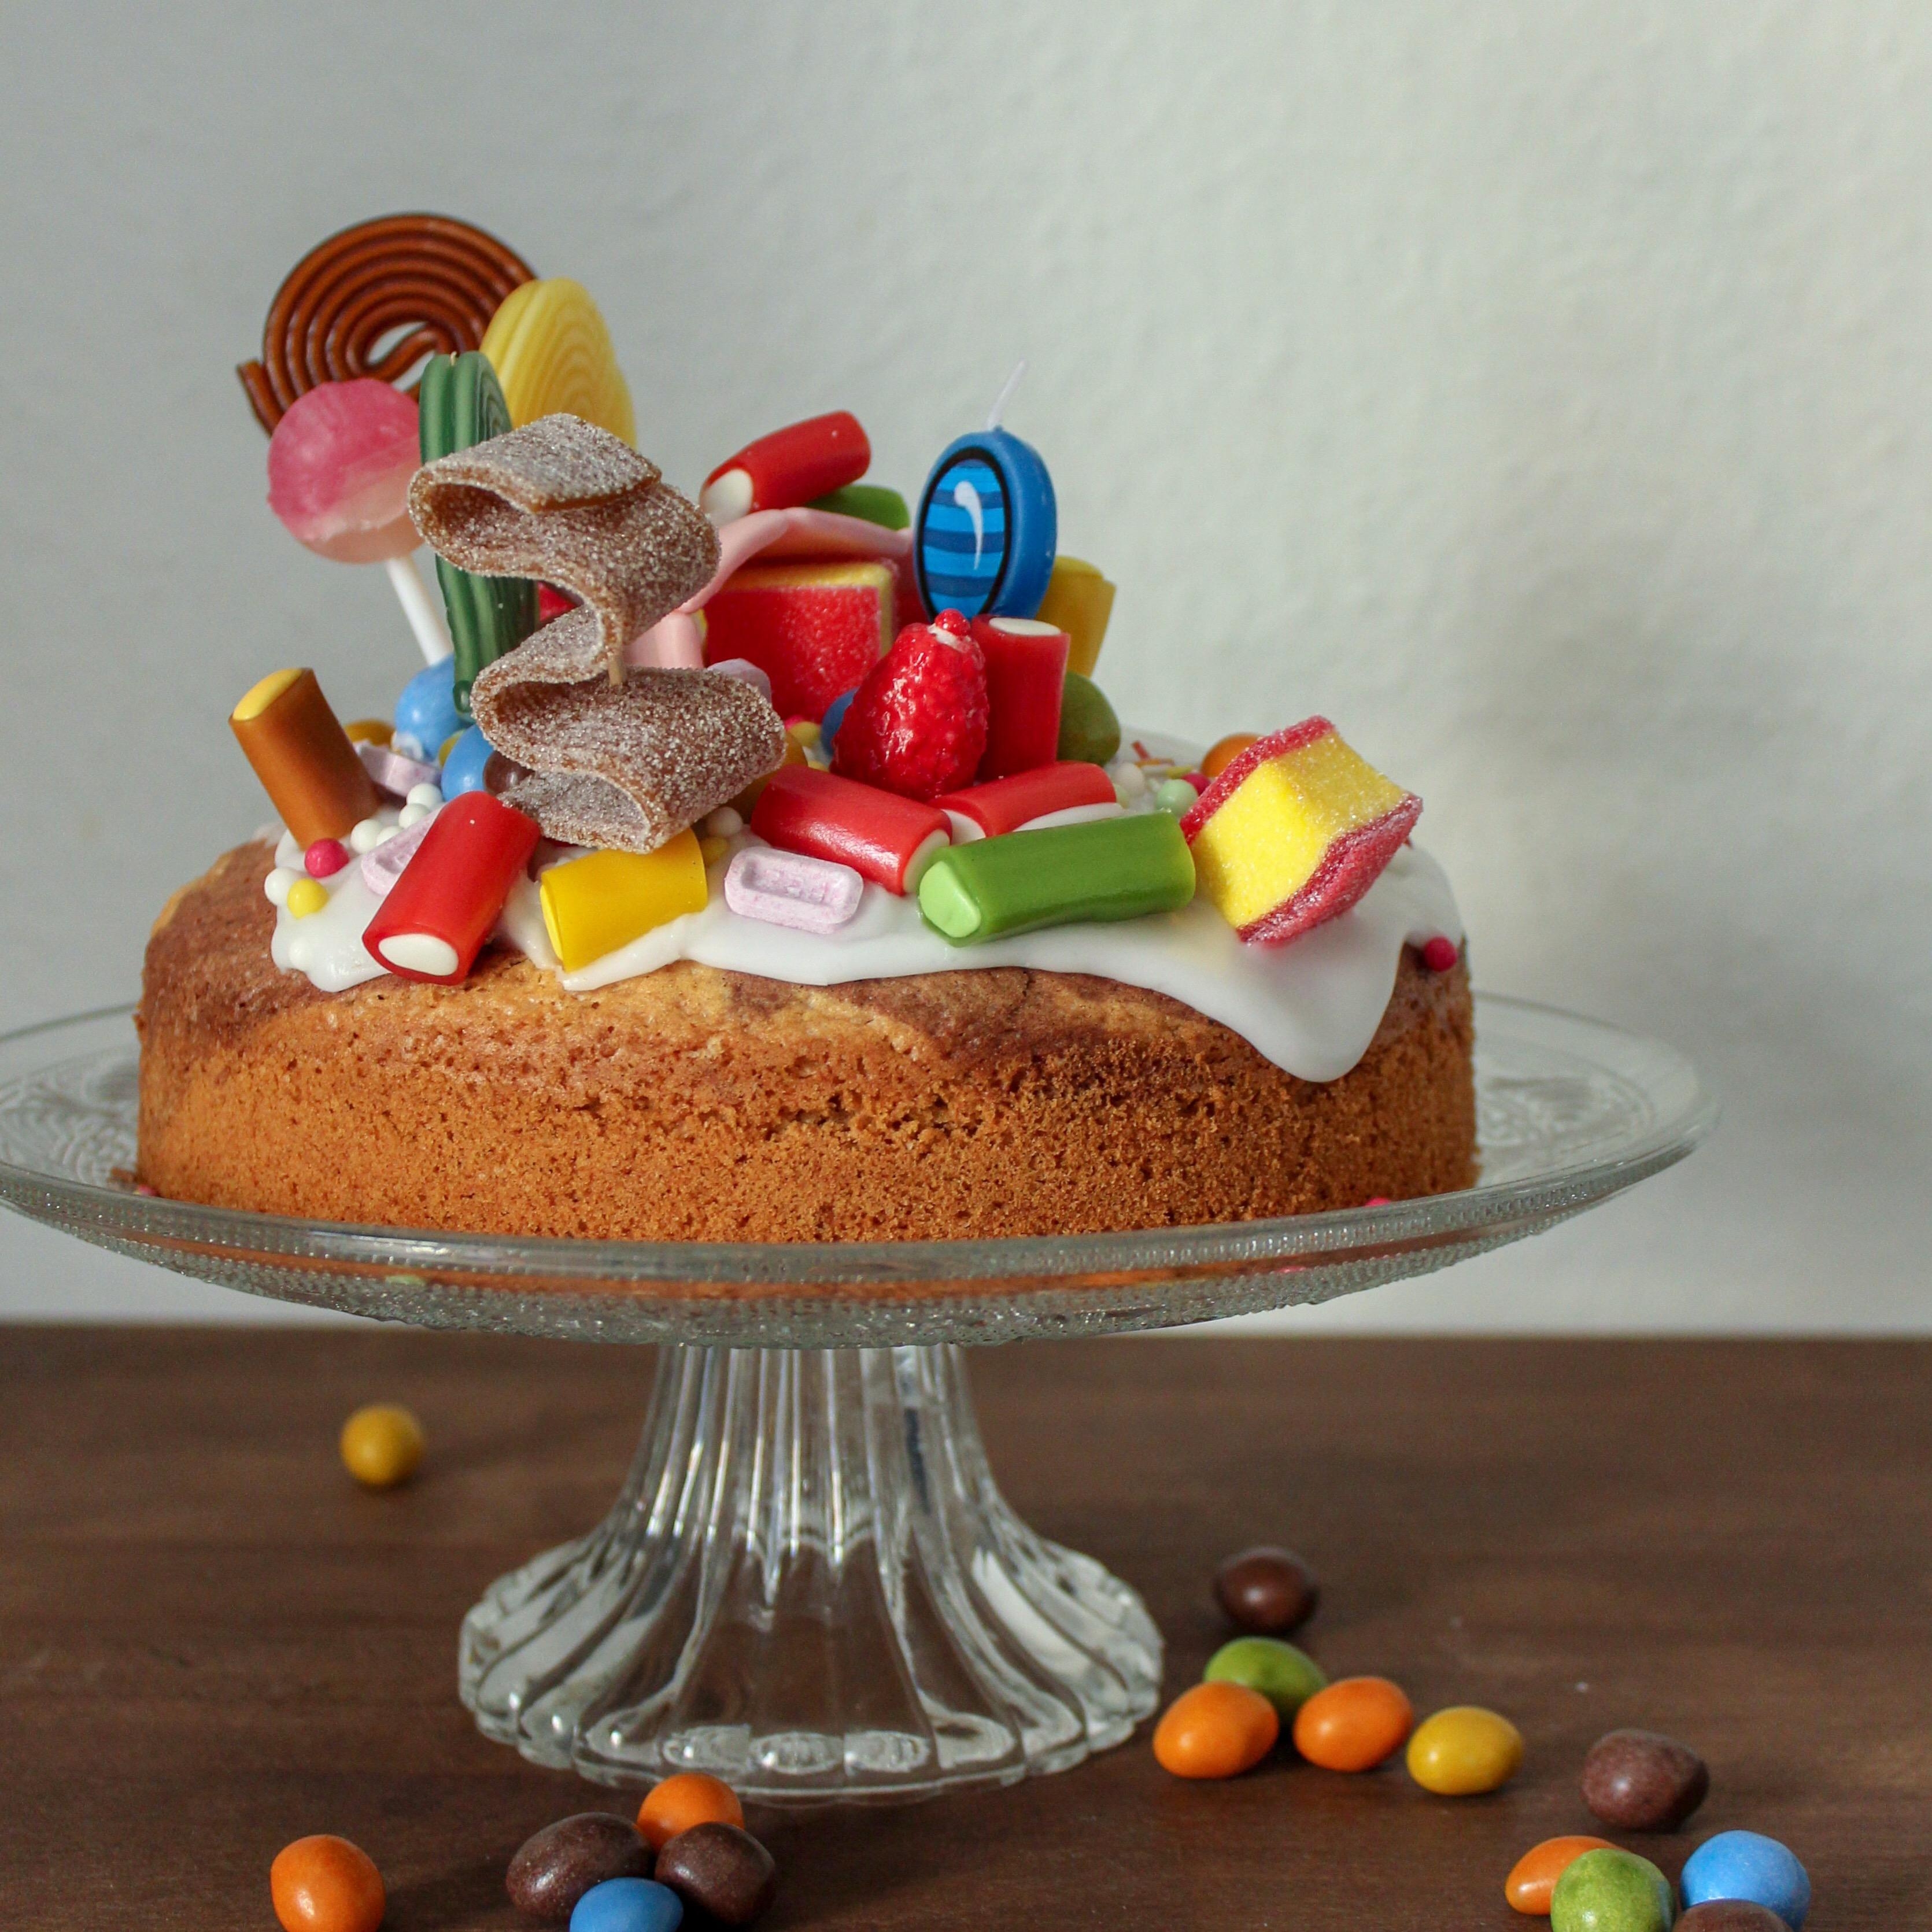 Jemand nach den Feiertagen noch was Süßes? 😜 #candycake 